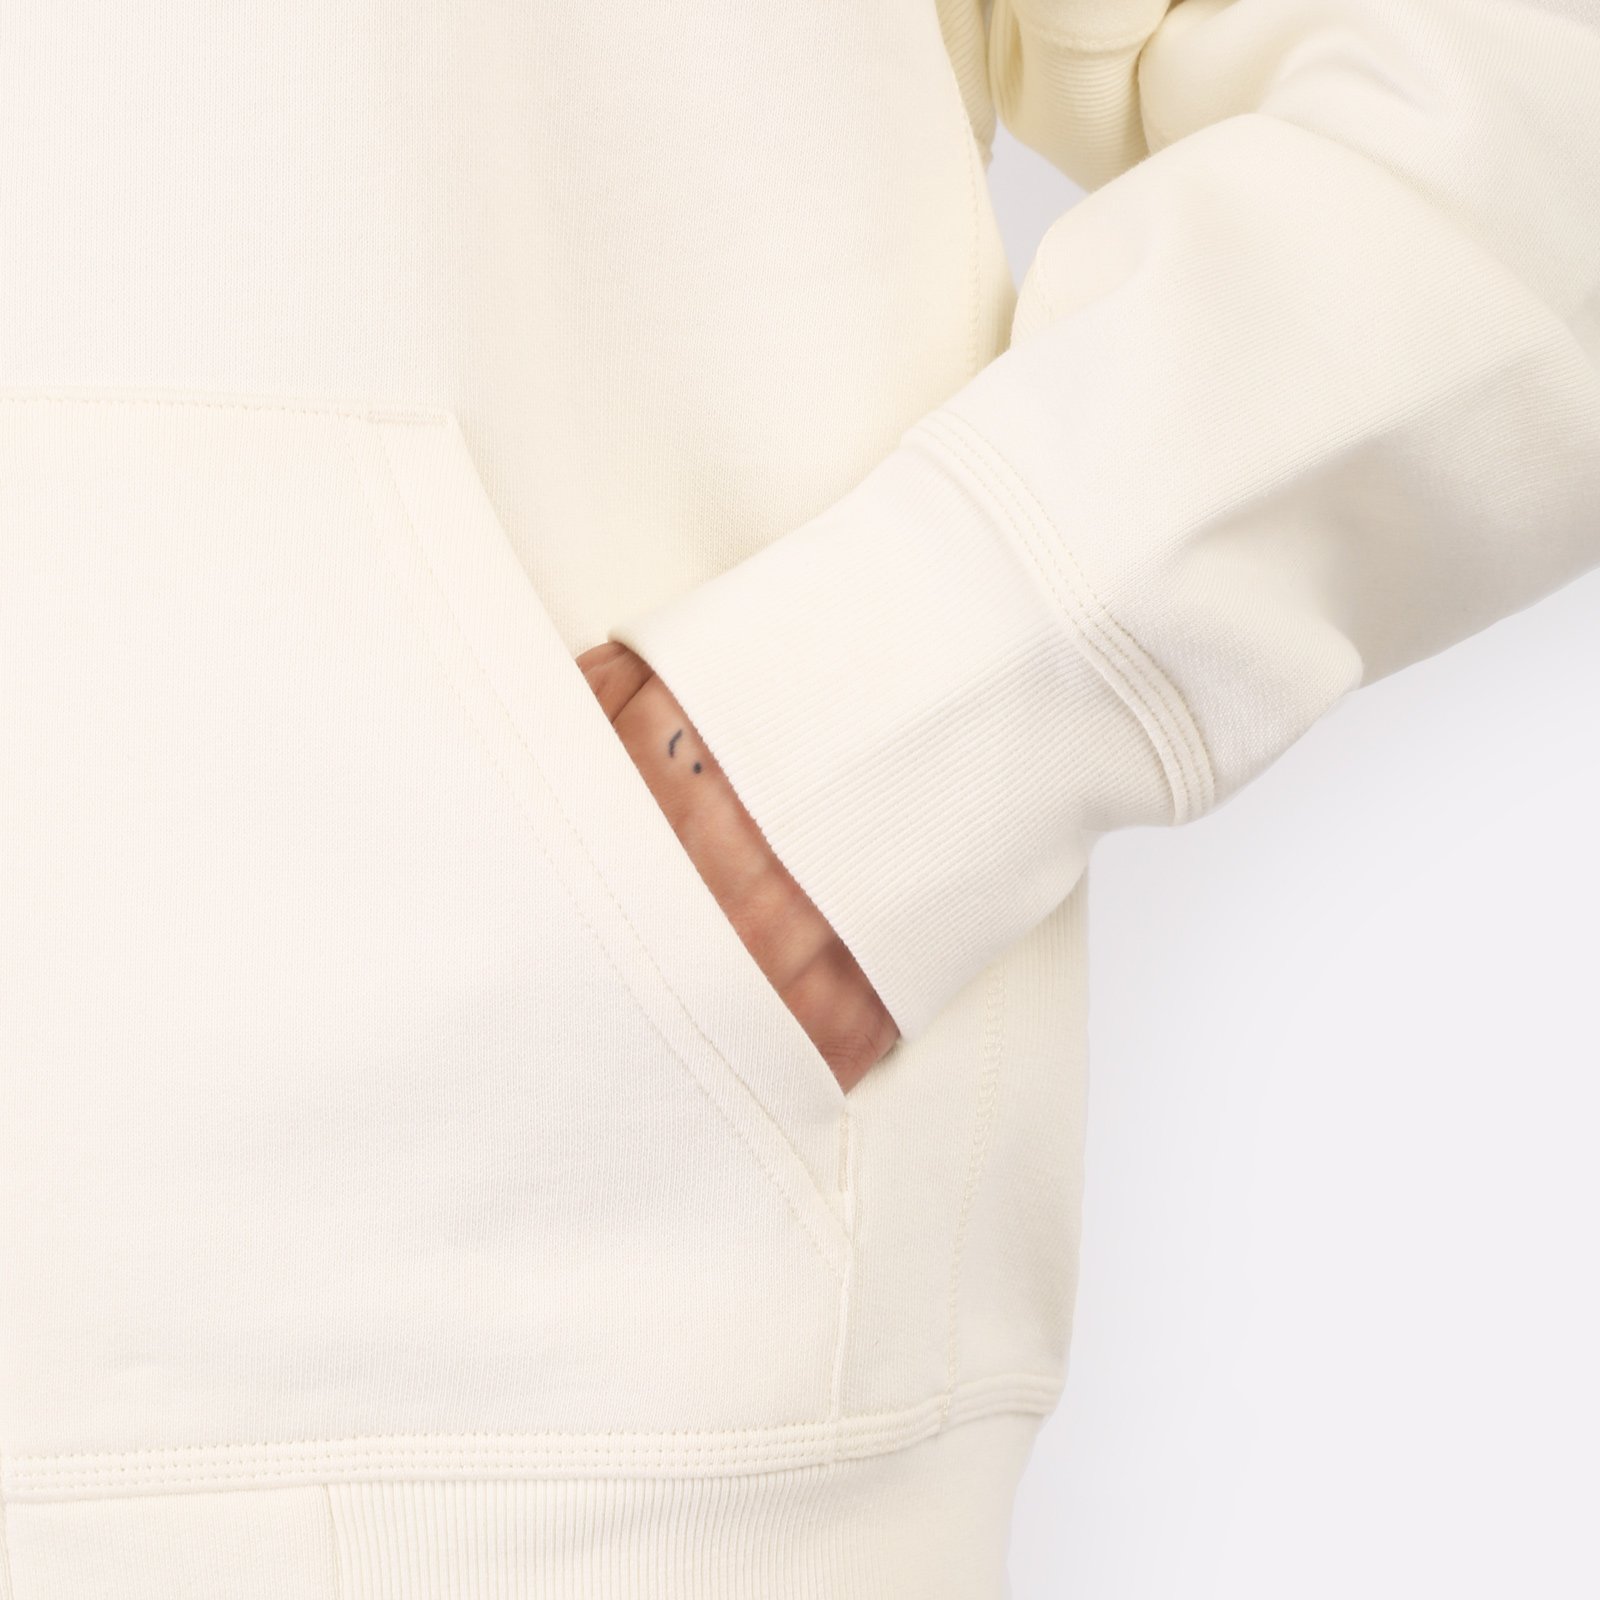 мужская бежевая толстовка Carhartt WIP Hooded American Script Jacket I033063-wax - цена, описание, фото 5